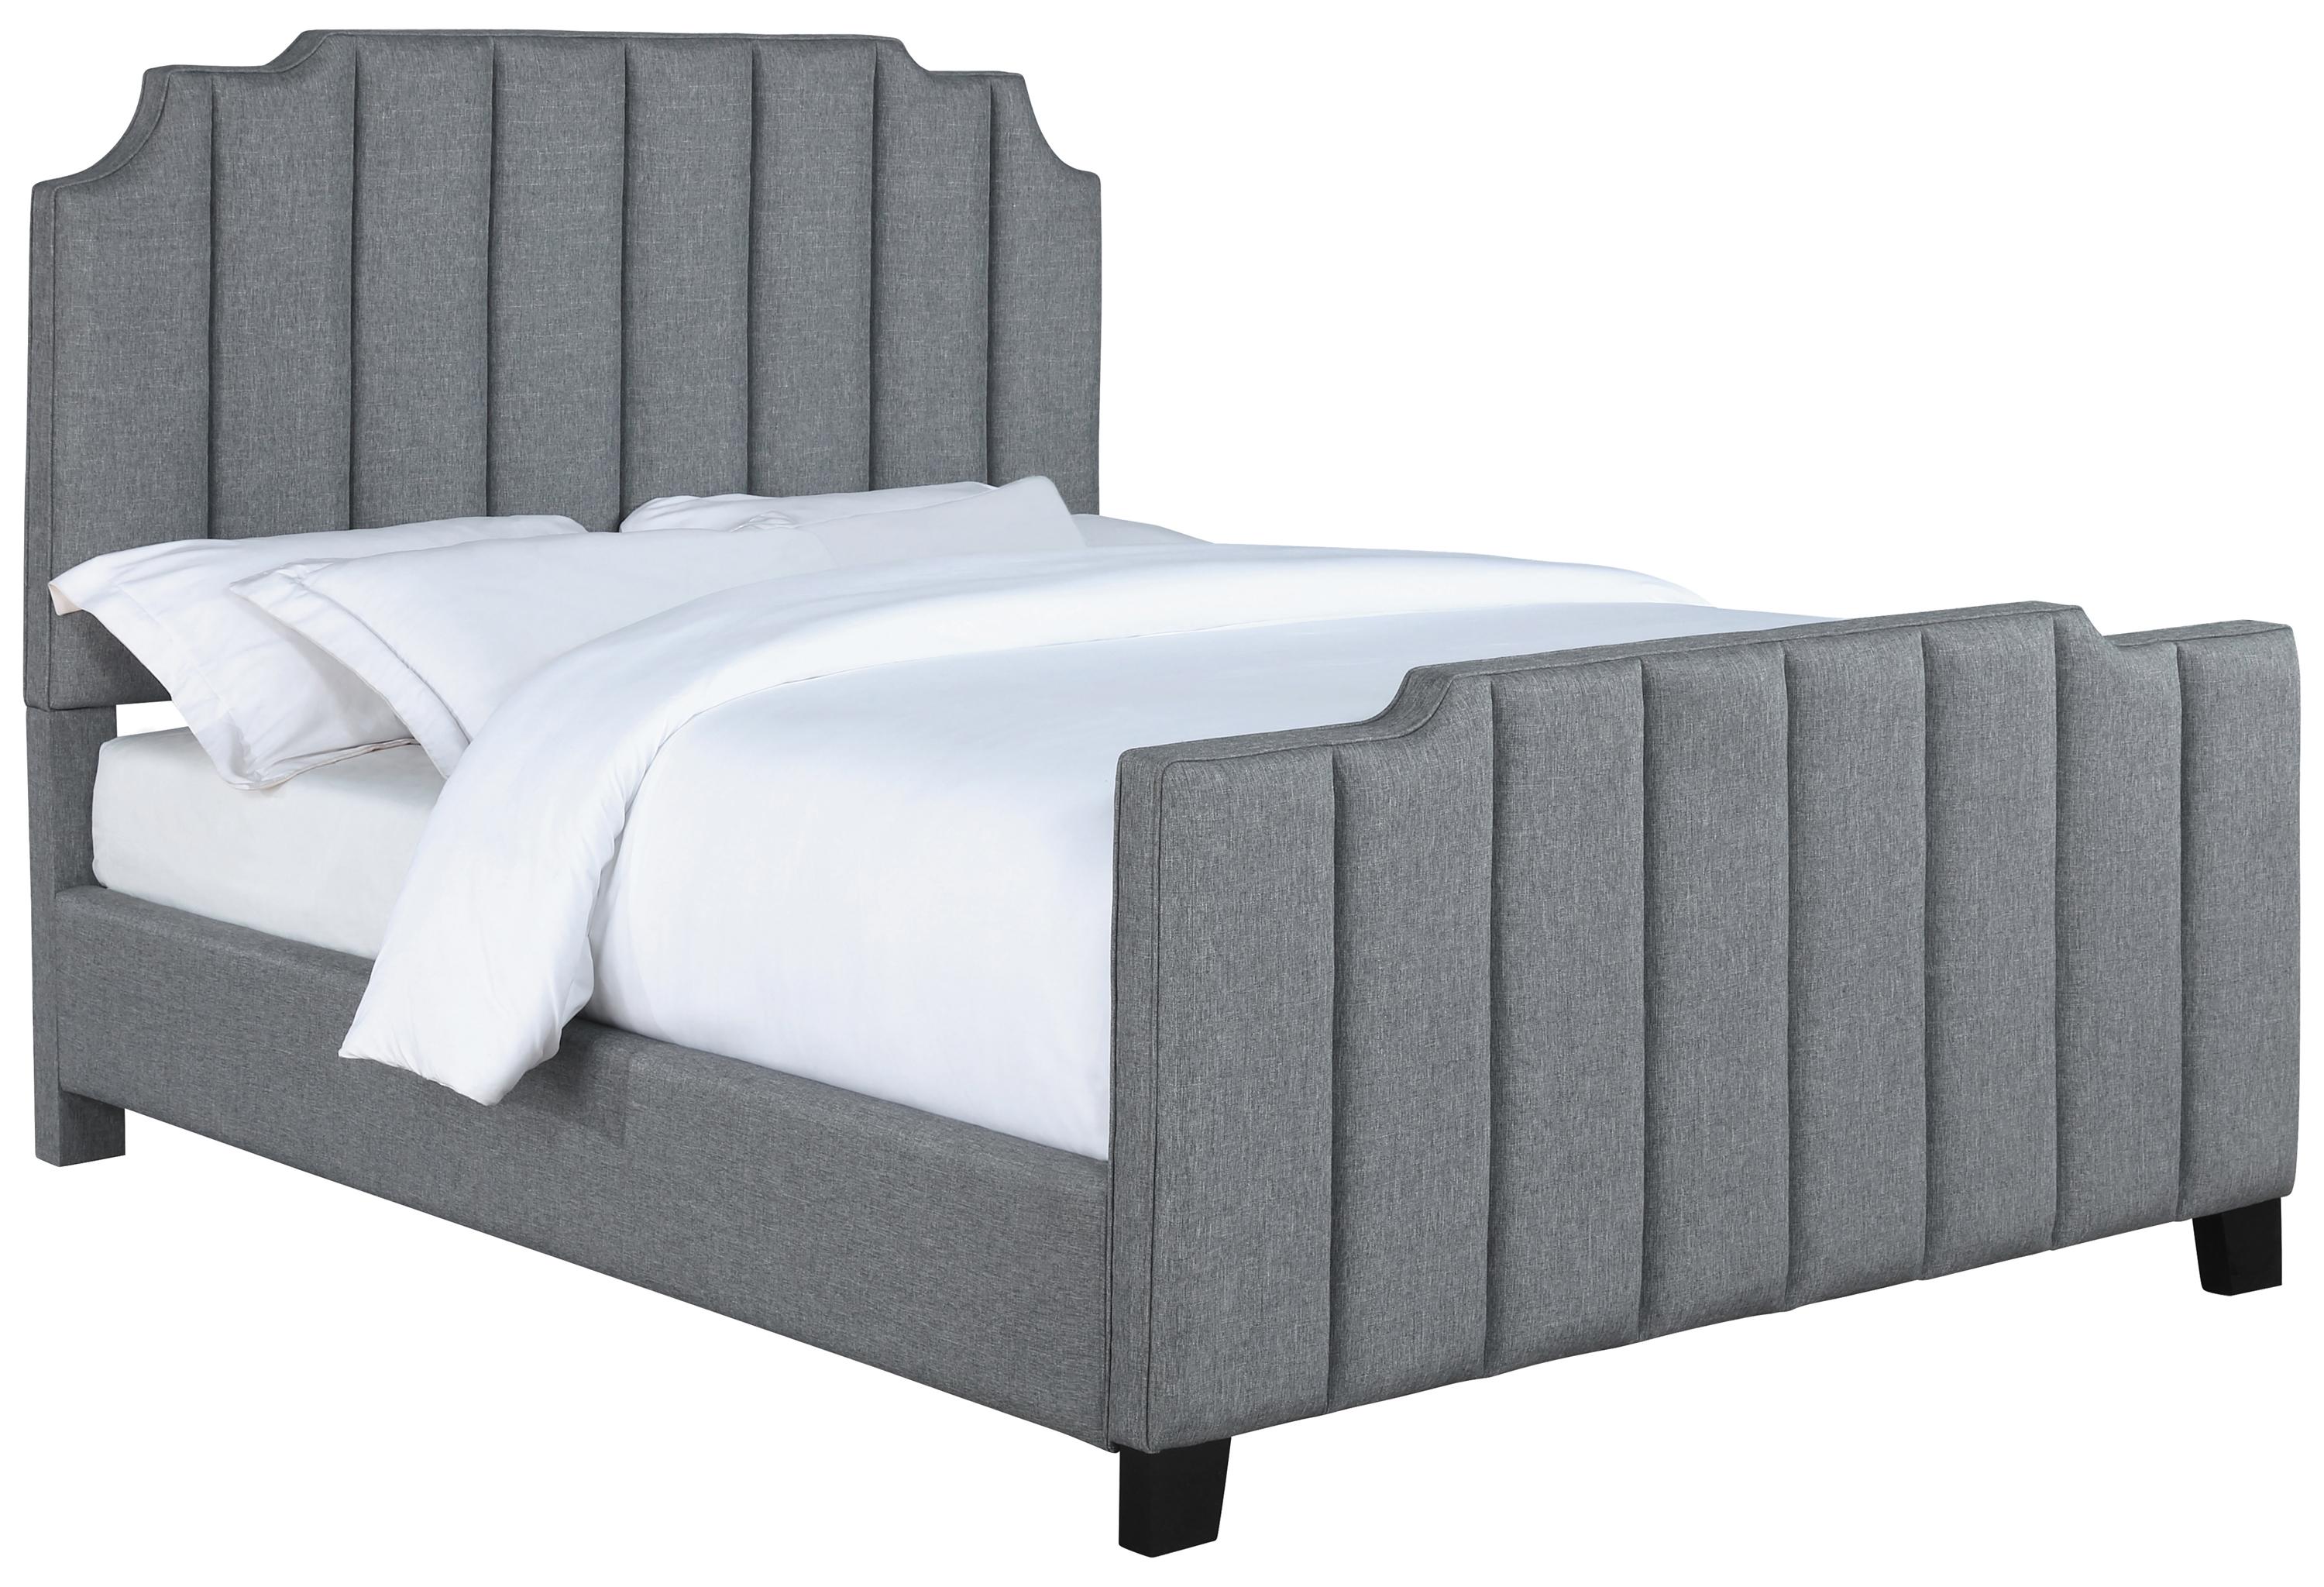 

    
Contemporary Light Gray Fabric Upholstery King Bed Coaster 306029KE Fiona
